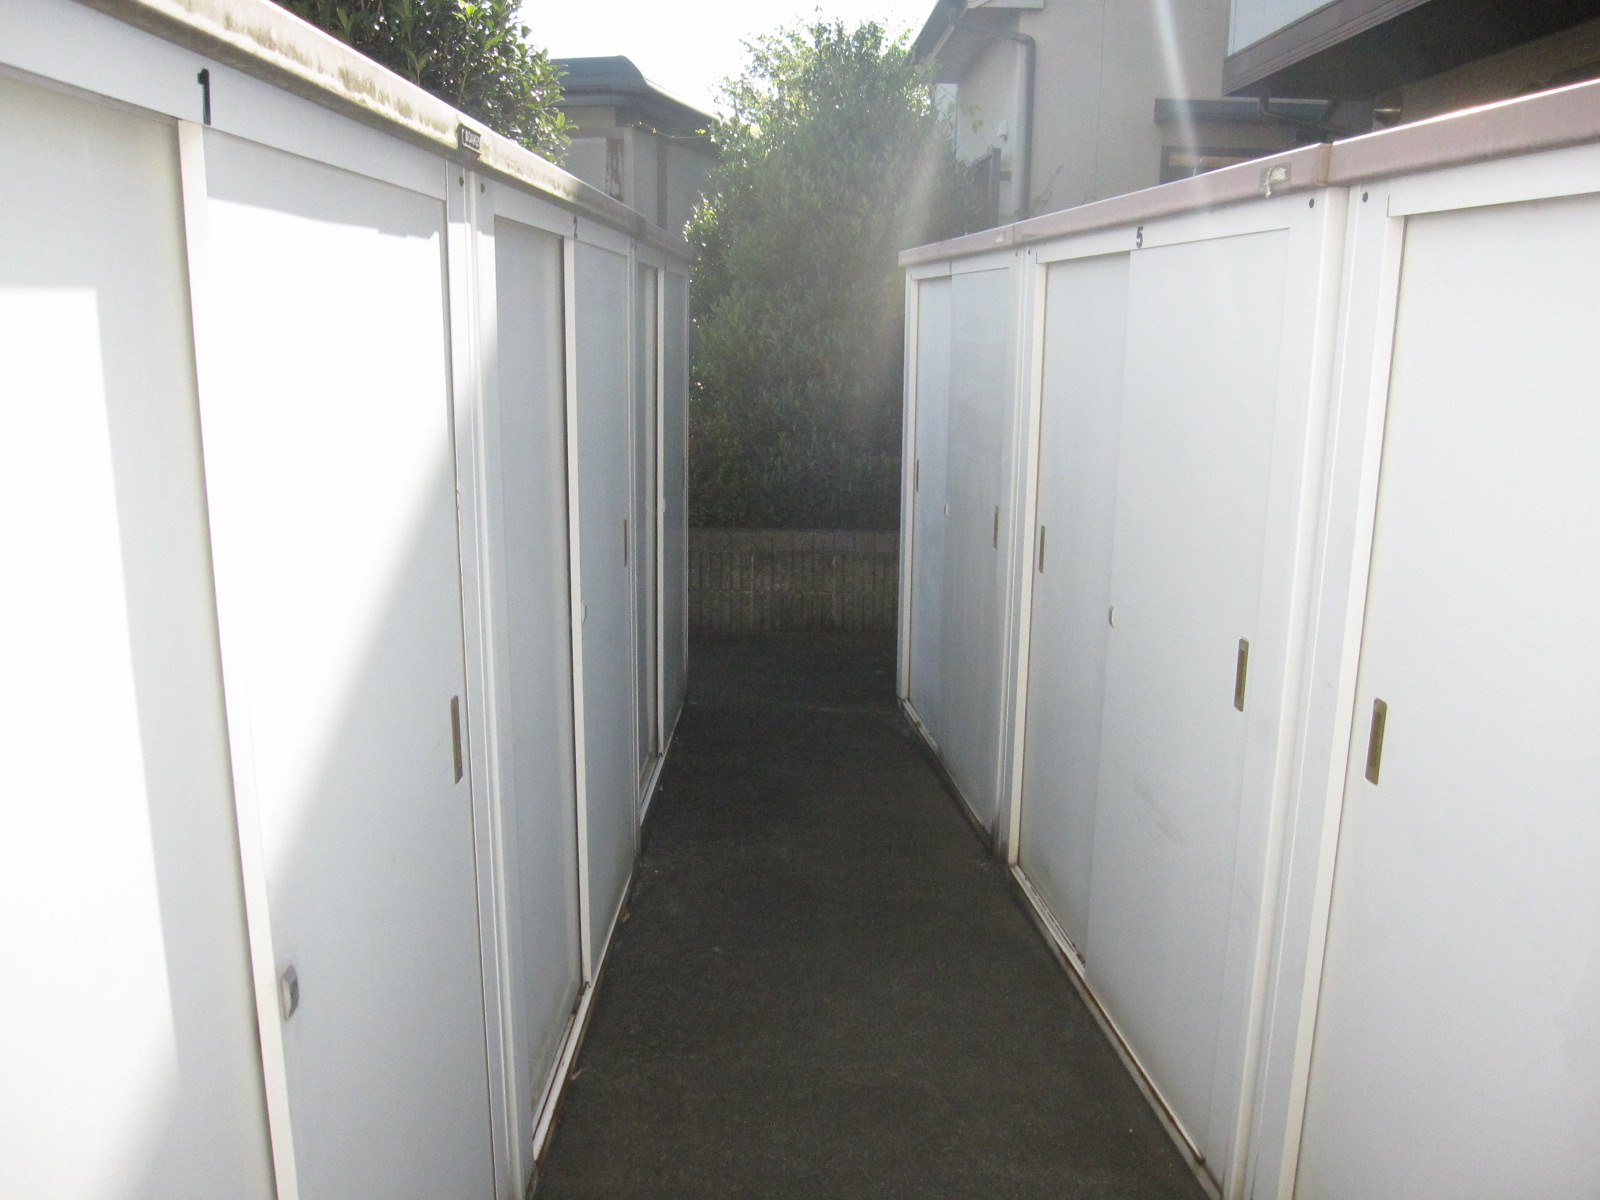 Other common areas. Door to door with special storeroom